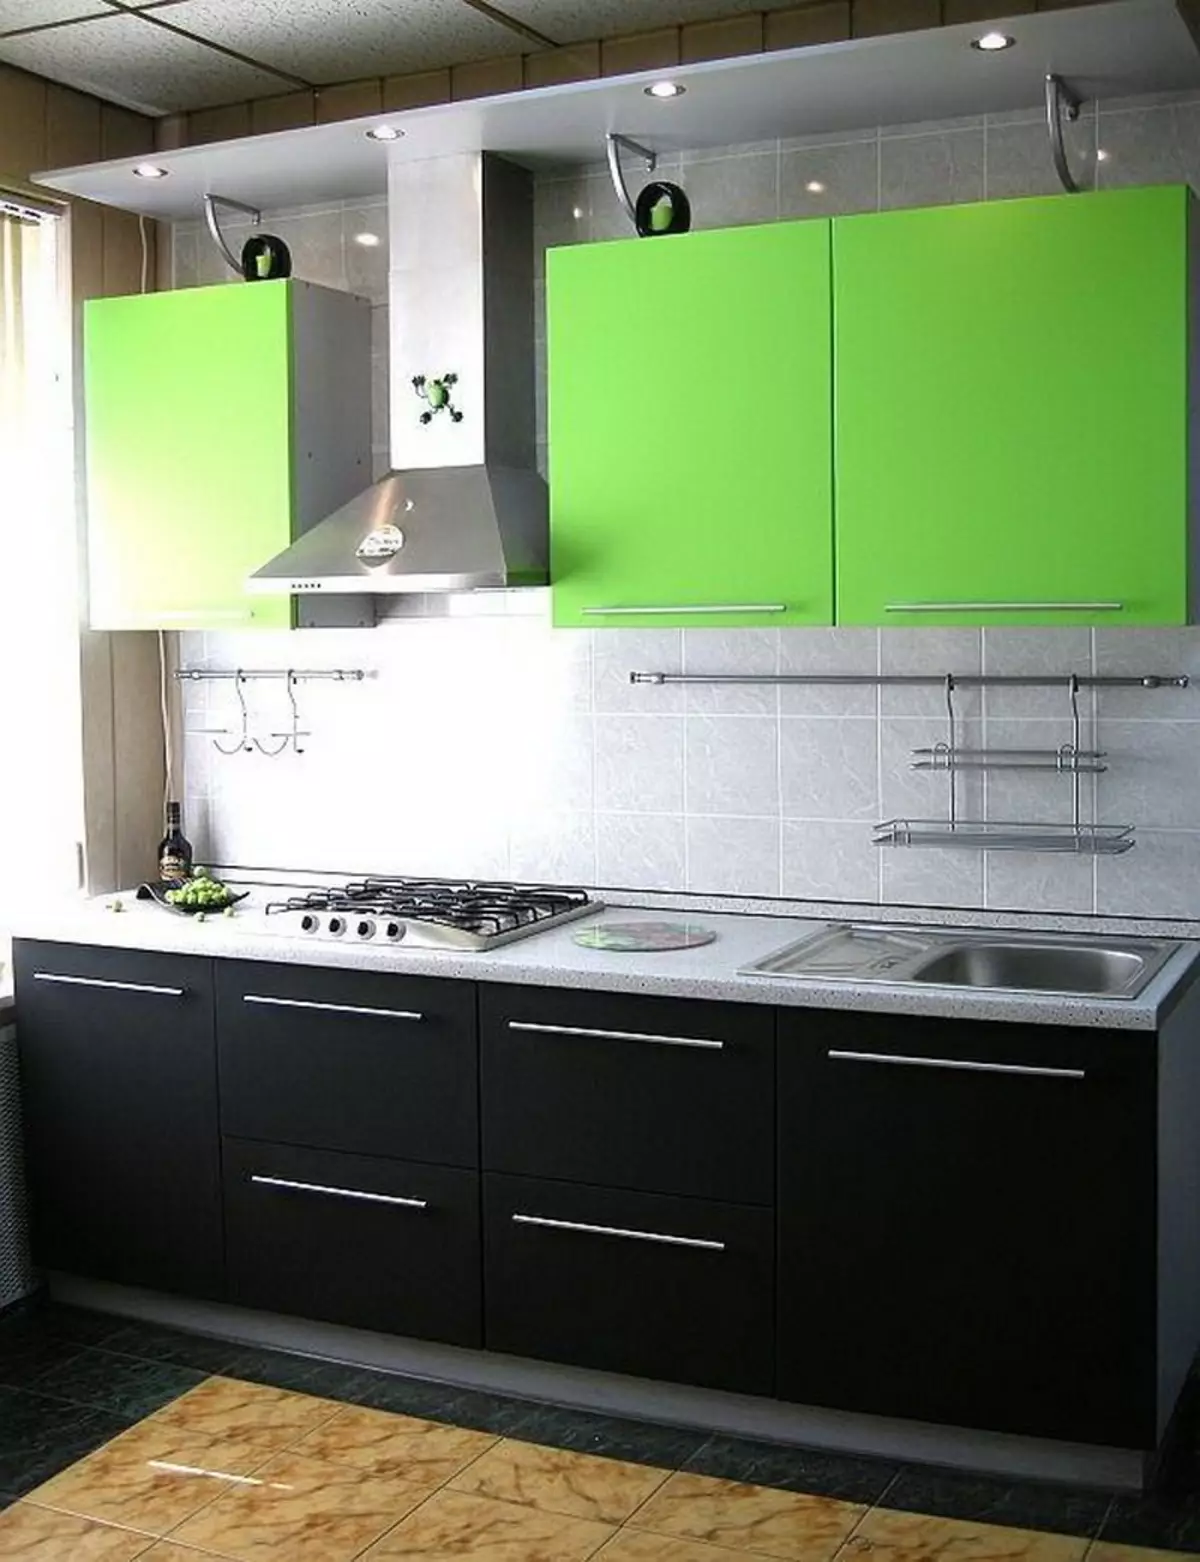 Kanîya kesk (111 Wêneyên): Headset Green Kitchen in Sêwirana Navxwe, Hilbijartina Wallpaper Green, Grey-Green û keskek kesk, reş û kesk û kesk û kesk 9554_54